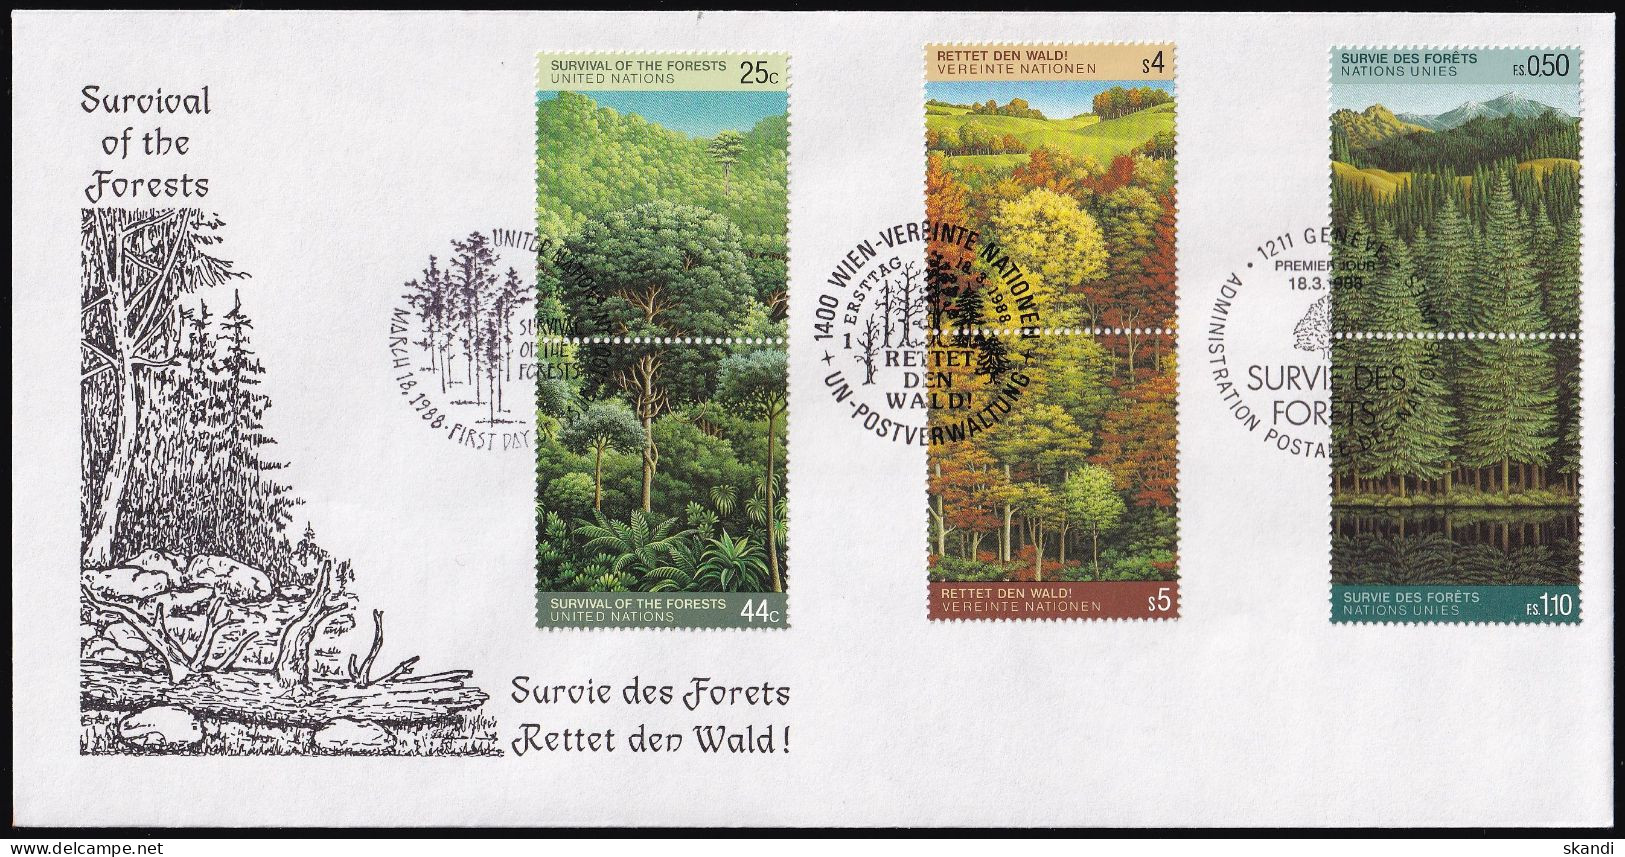 UNO NEW YORK - WIEN - GENF 1988 TRIO-FDC Rettet Den Wald - Emissions Communes New York/Genève/Vienne